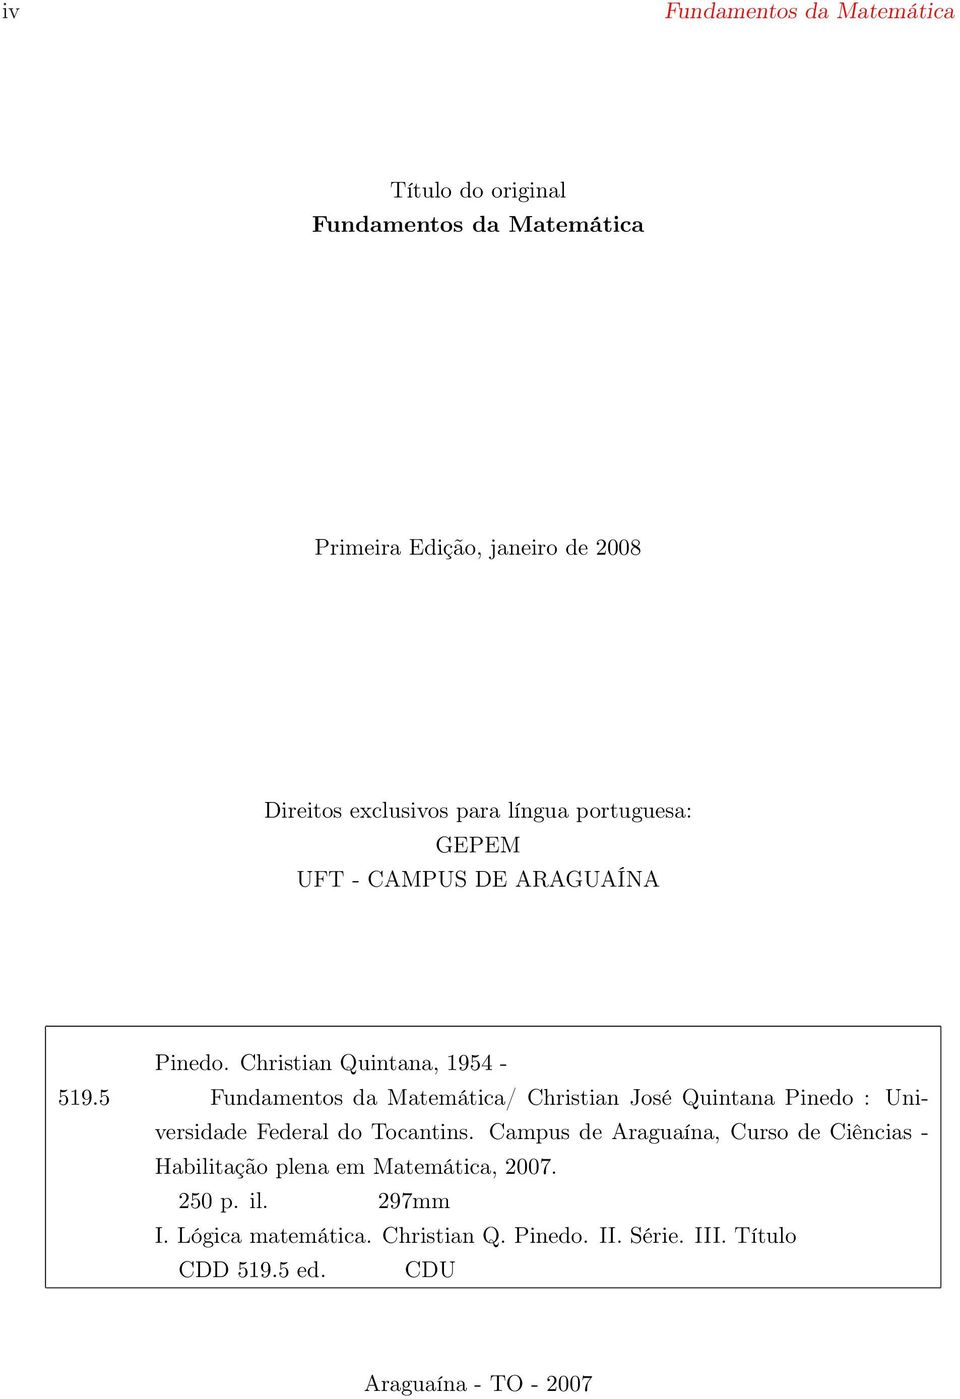 Christian Quintana, 1954 - Fundamentos da Matemática/ Christian José Quintana Pinedo : Universidade Federal do Tocantins.